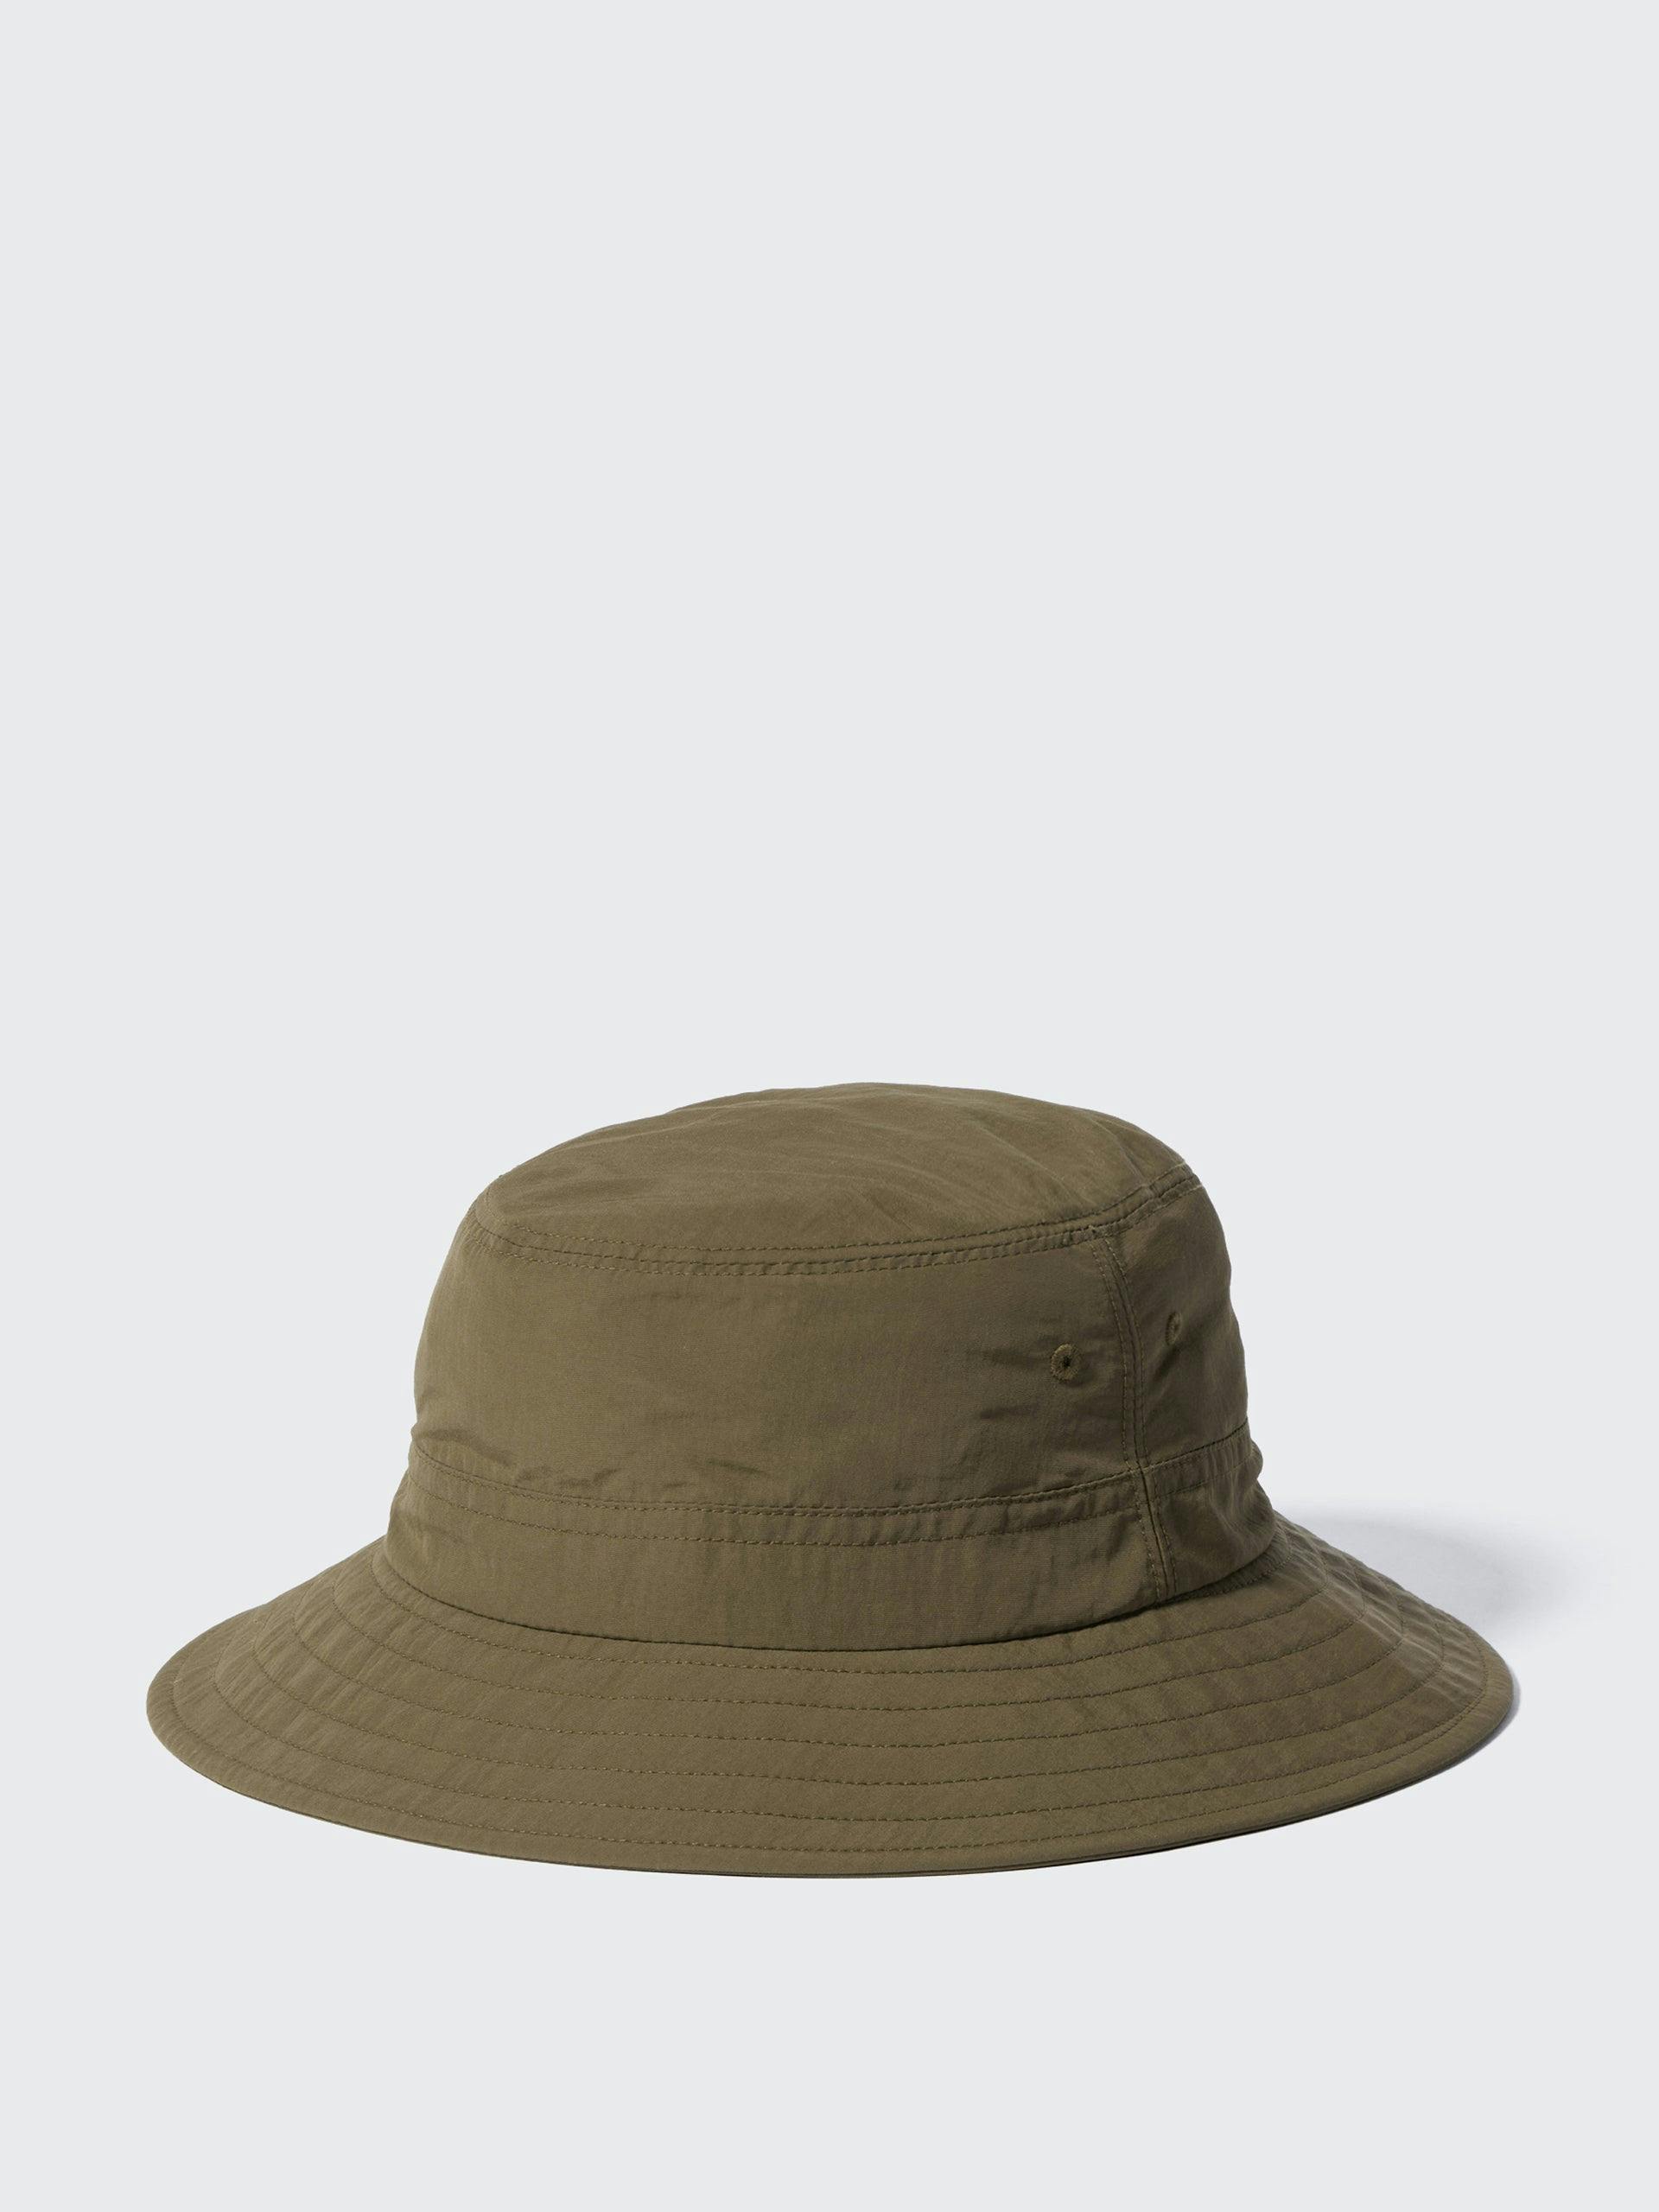 Soft nylon olive hat